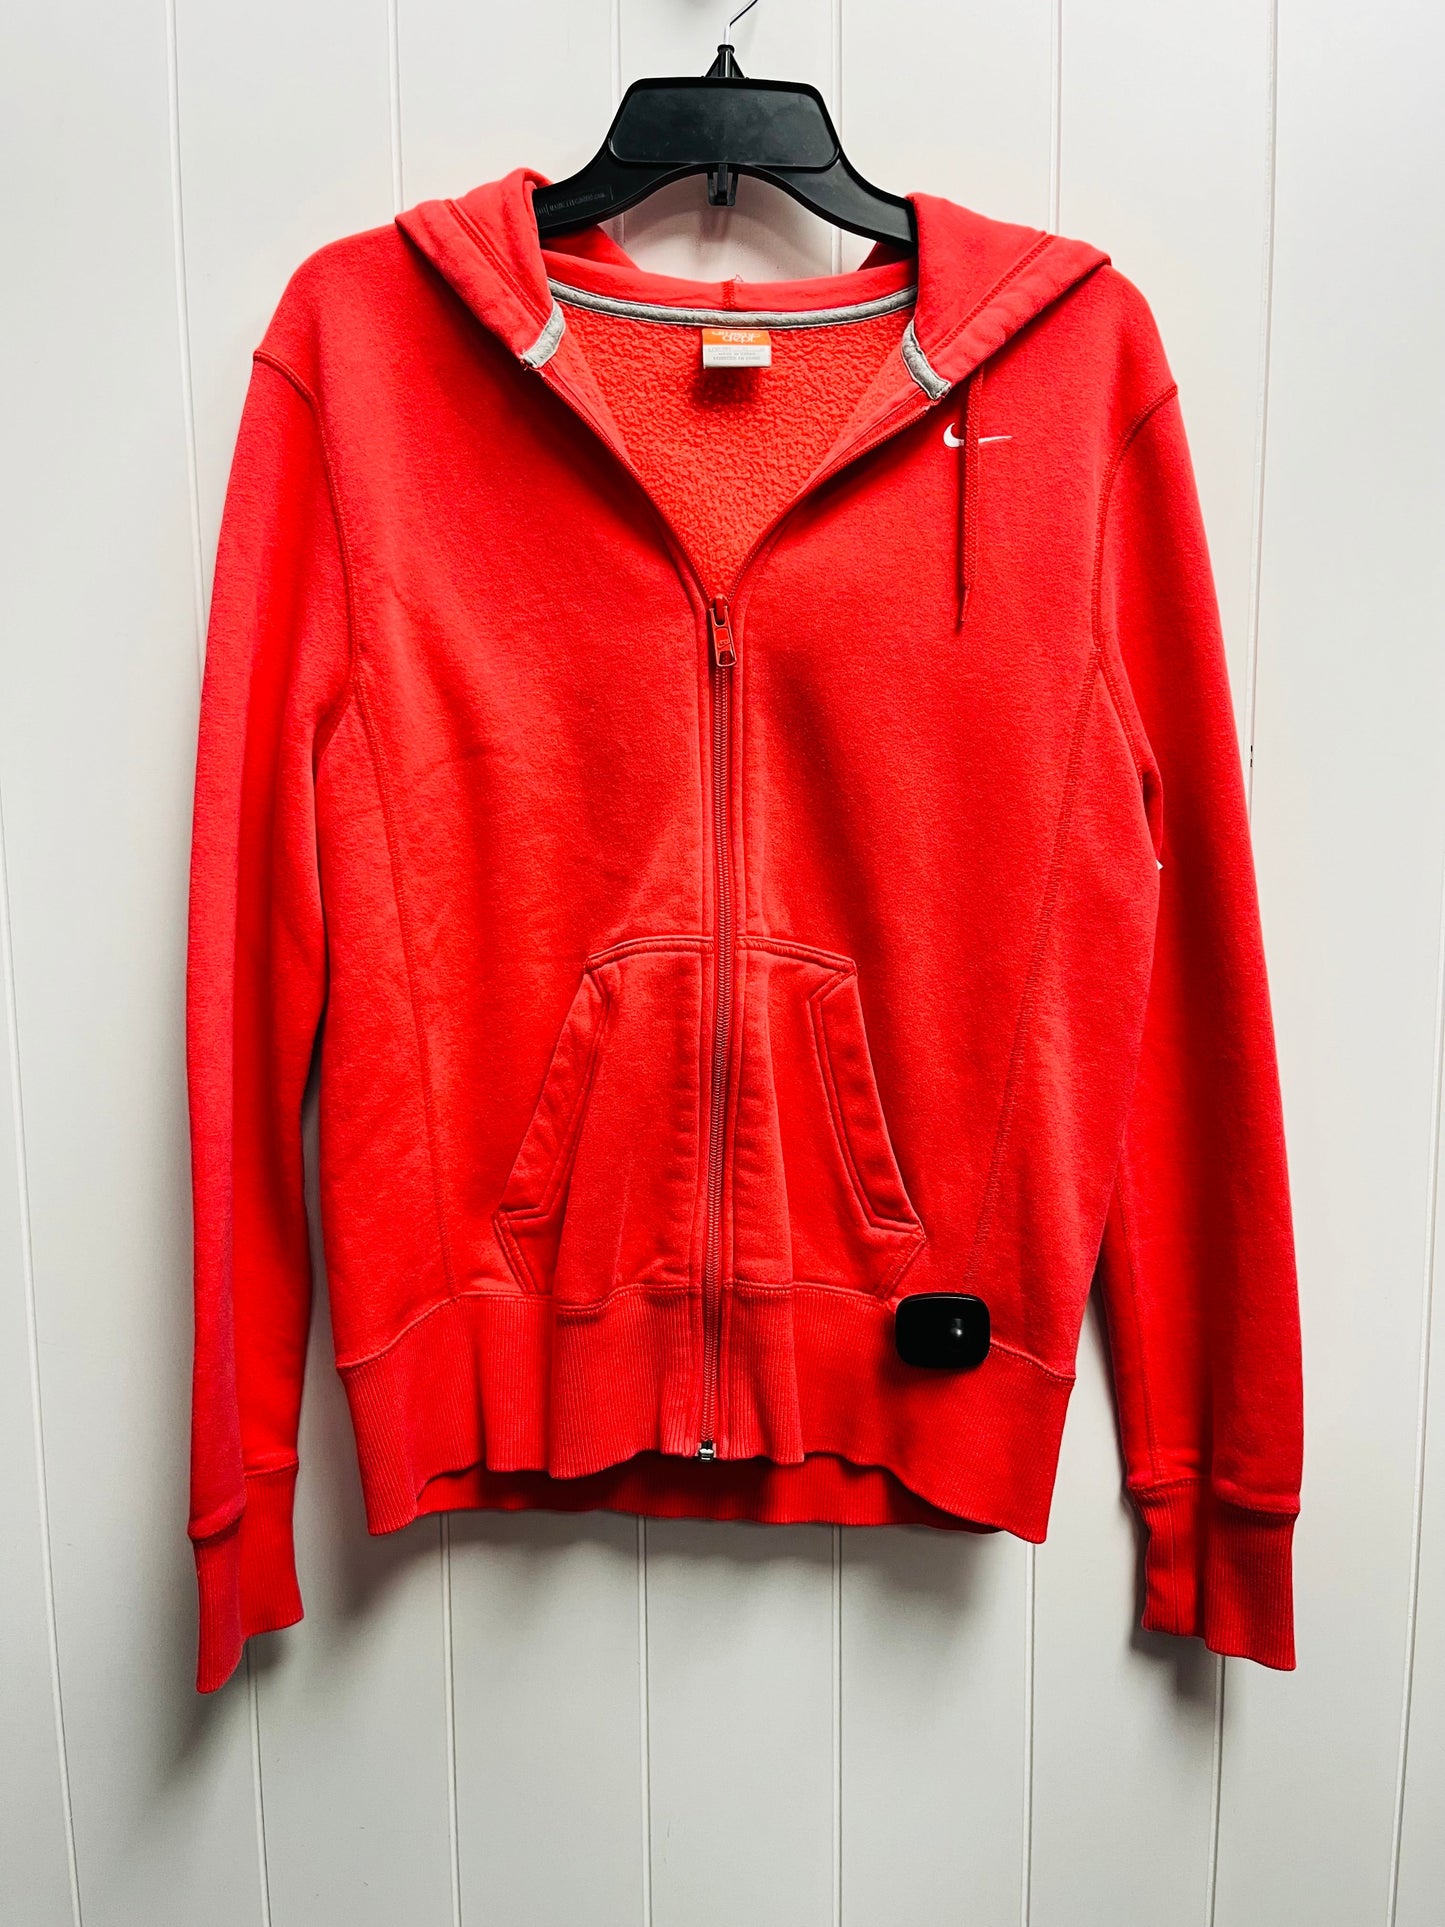 Red Athletic Sweatshirt Hoodie Nike, Size 12